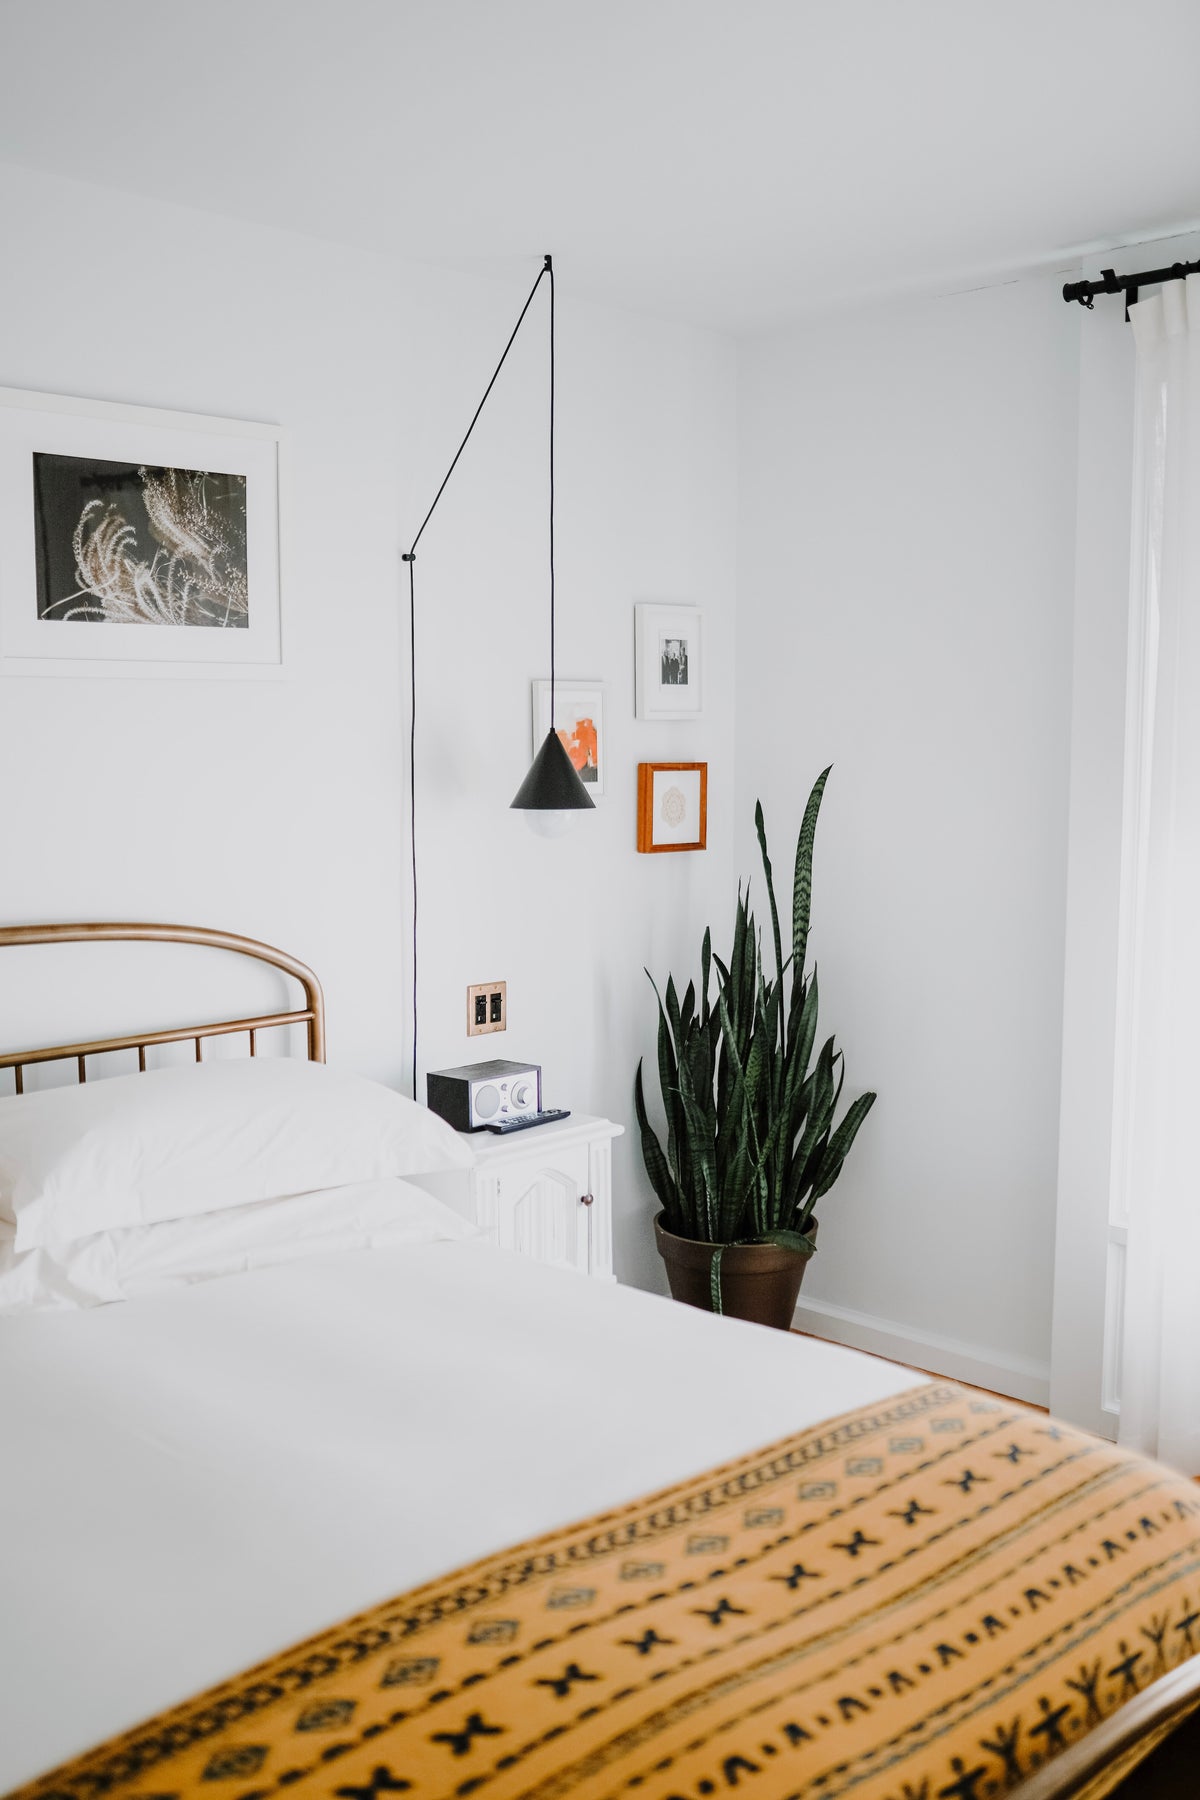 Ein minimalistisches Schlaf-Zimmer mit einer Sansevieria in der Ecke. Das Bett ist weiss, sowie auch der Nachttisch.